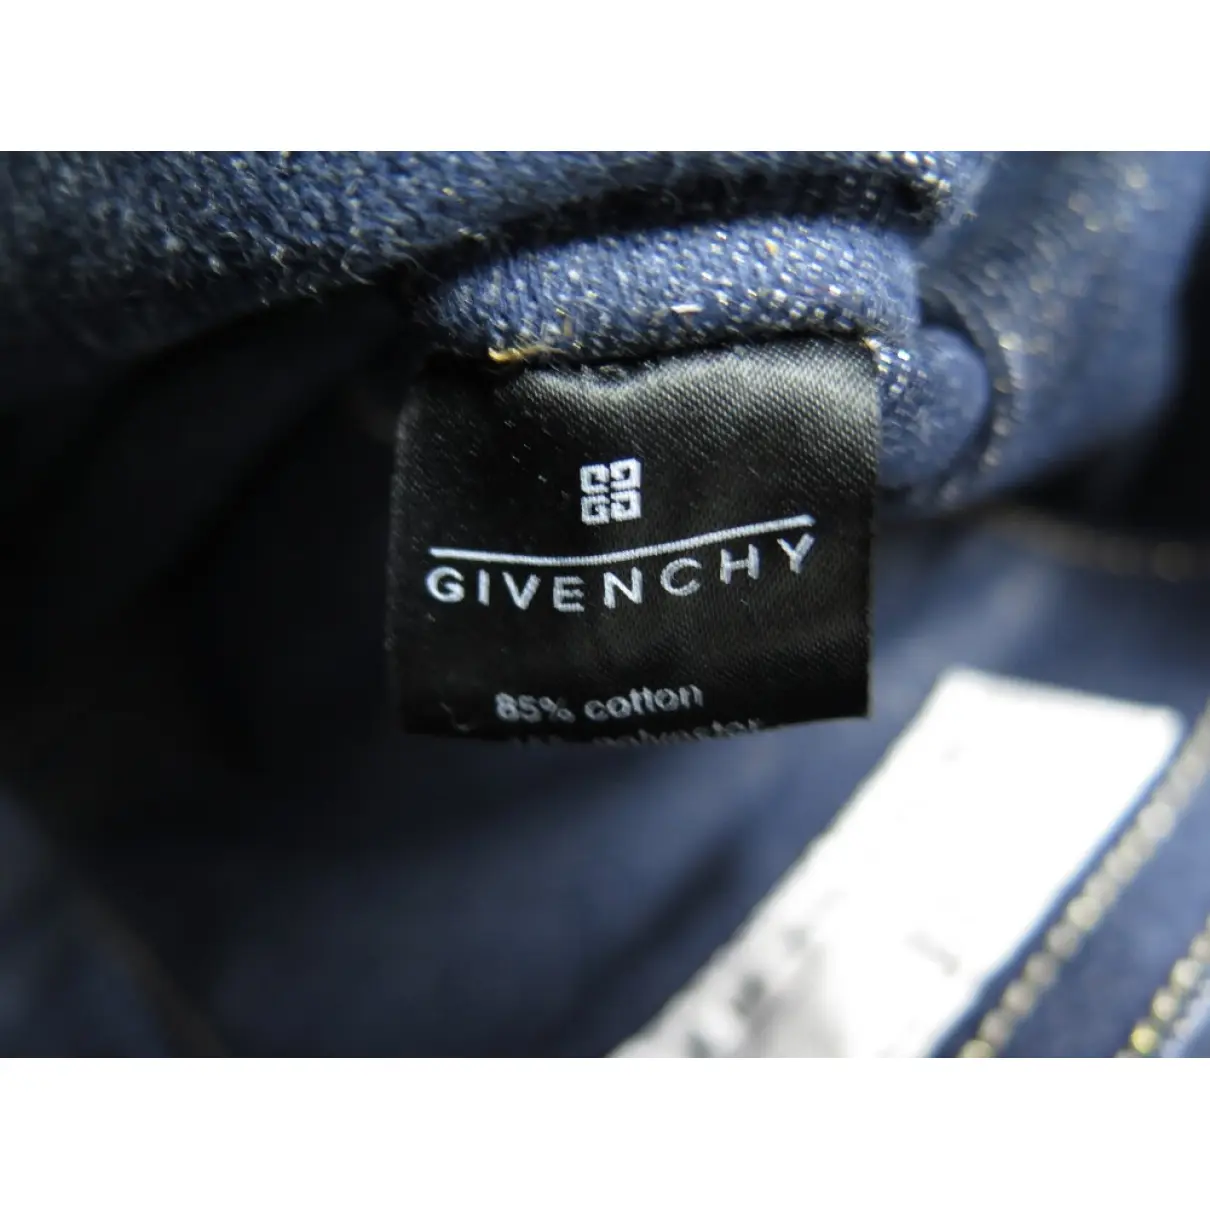 Handbag Givenchy